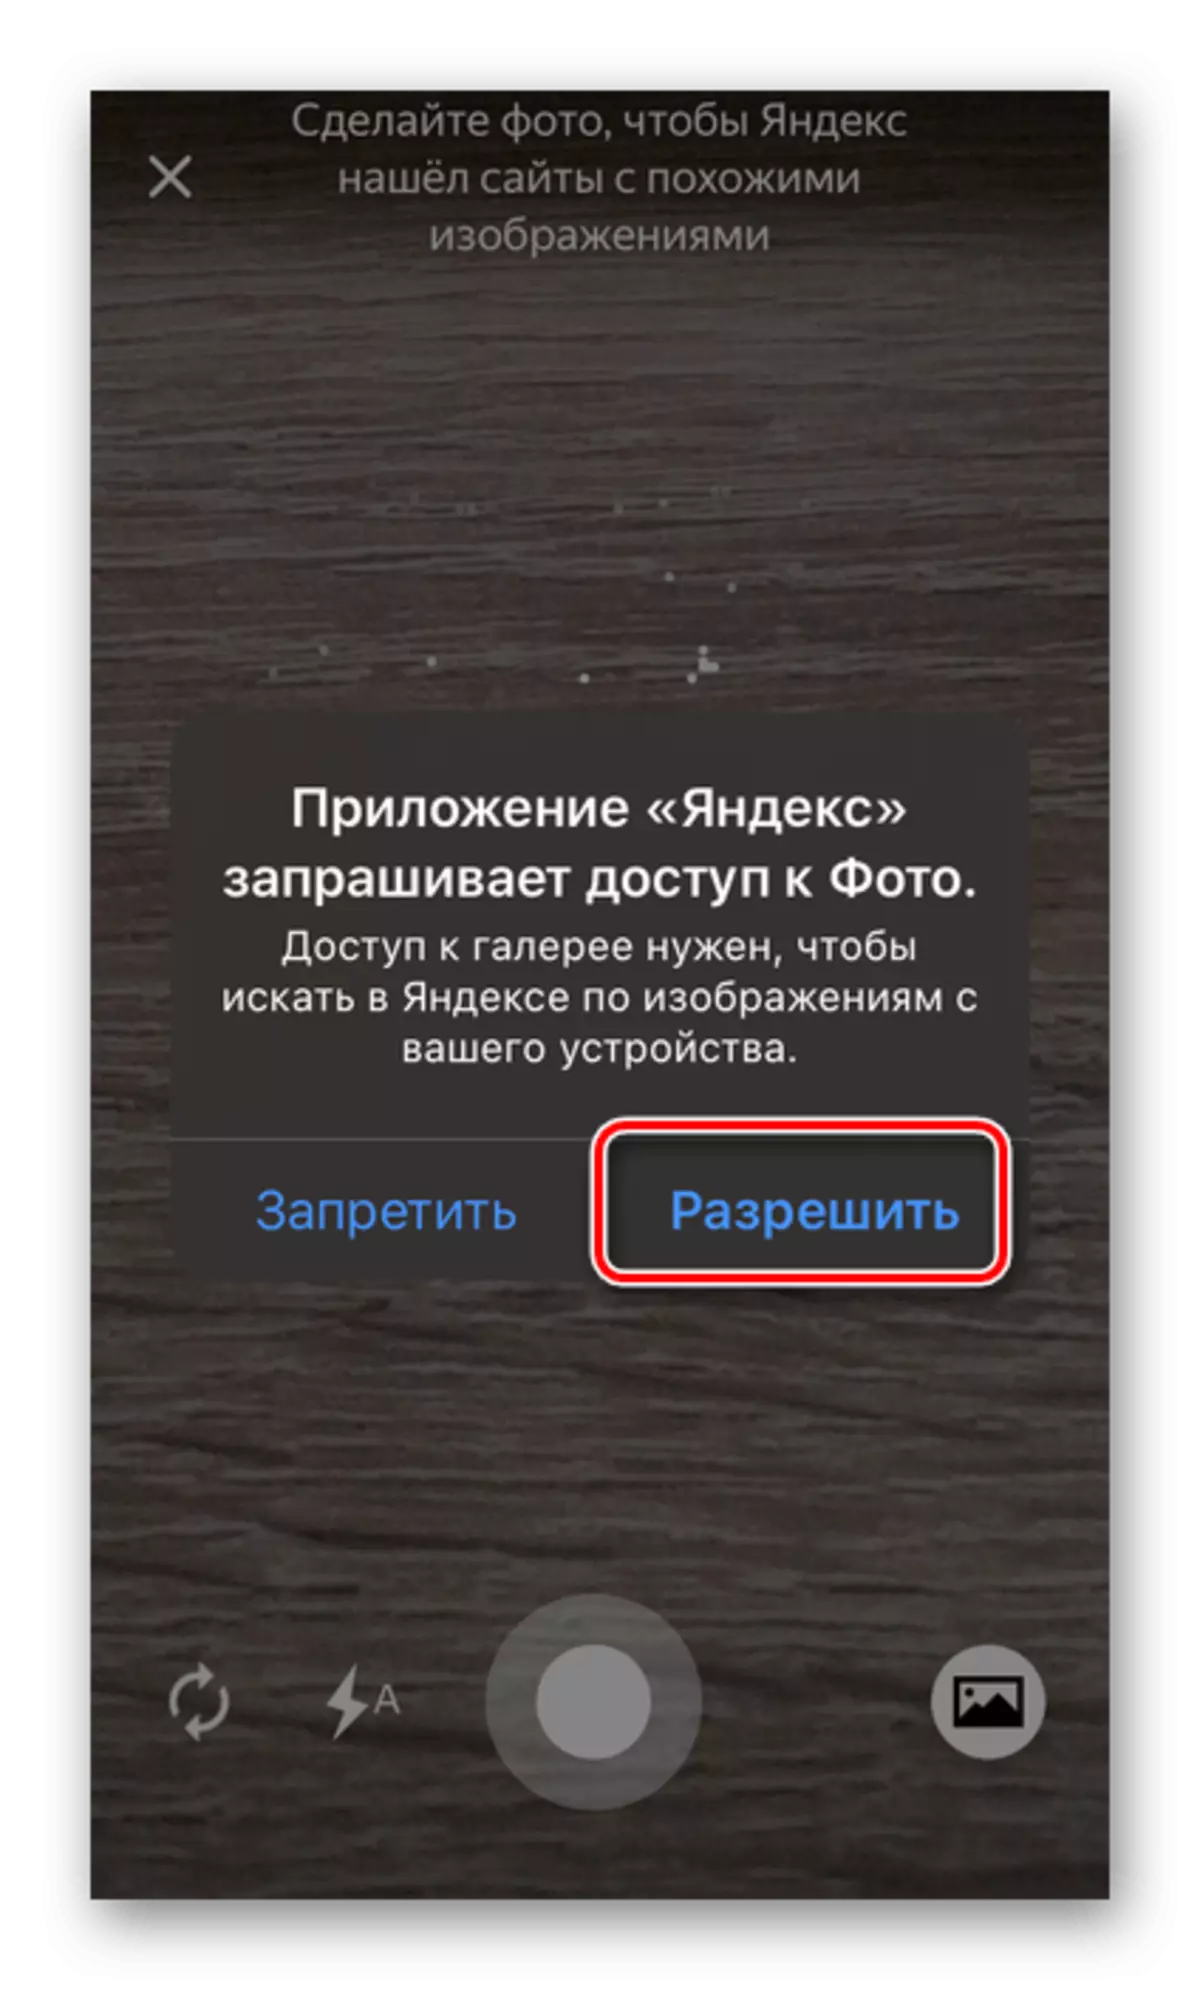 允许访问手机上的Yandex应用程序中的照片